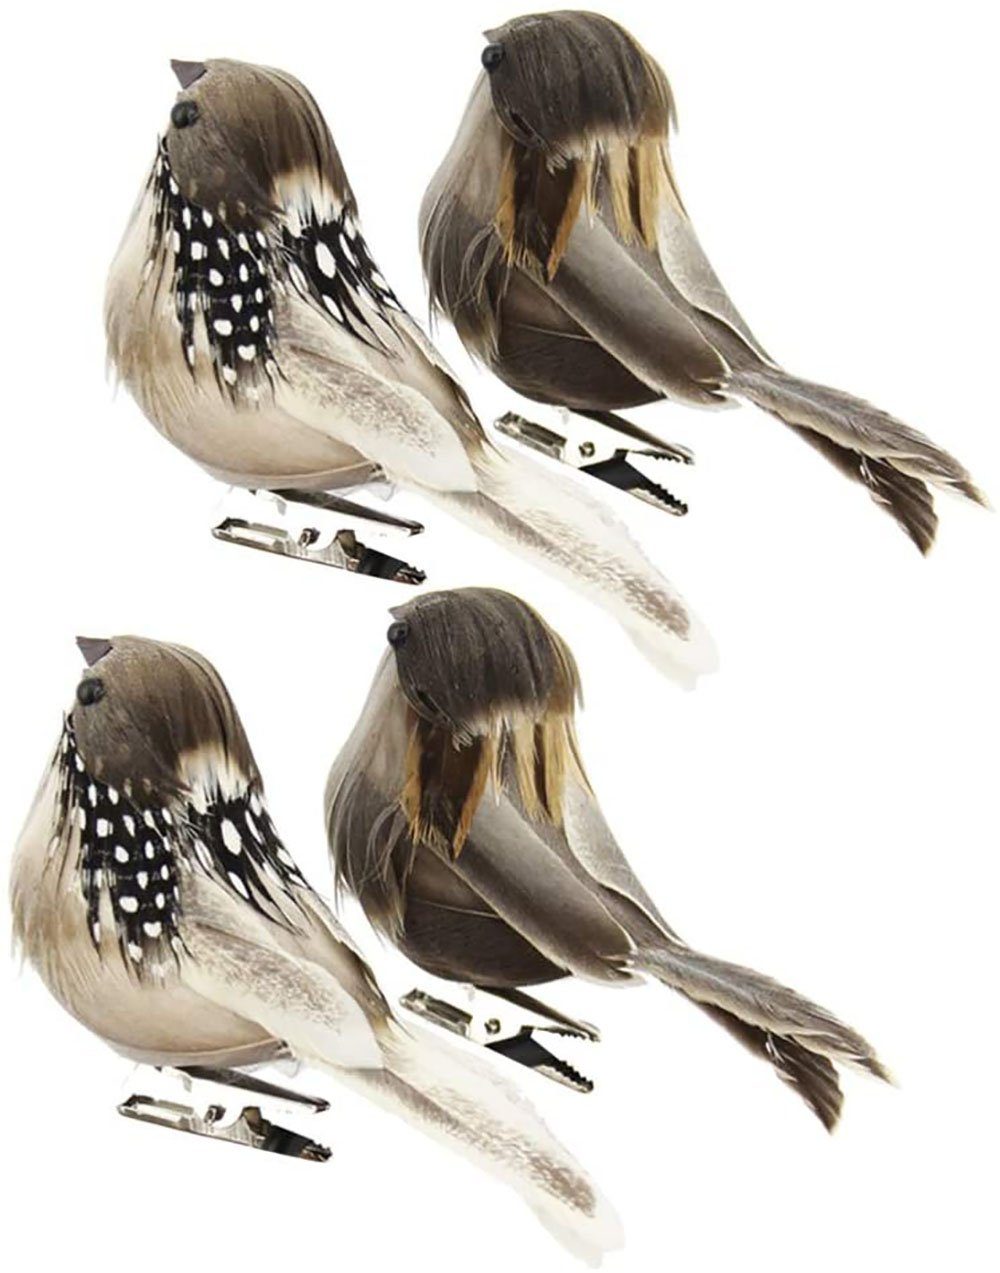 Deko Schaum Vogel Figur aus Künstliche Feder Dekovögel Produktverschönerung 